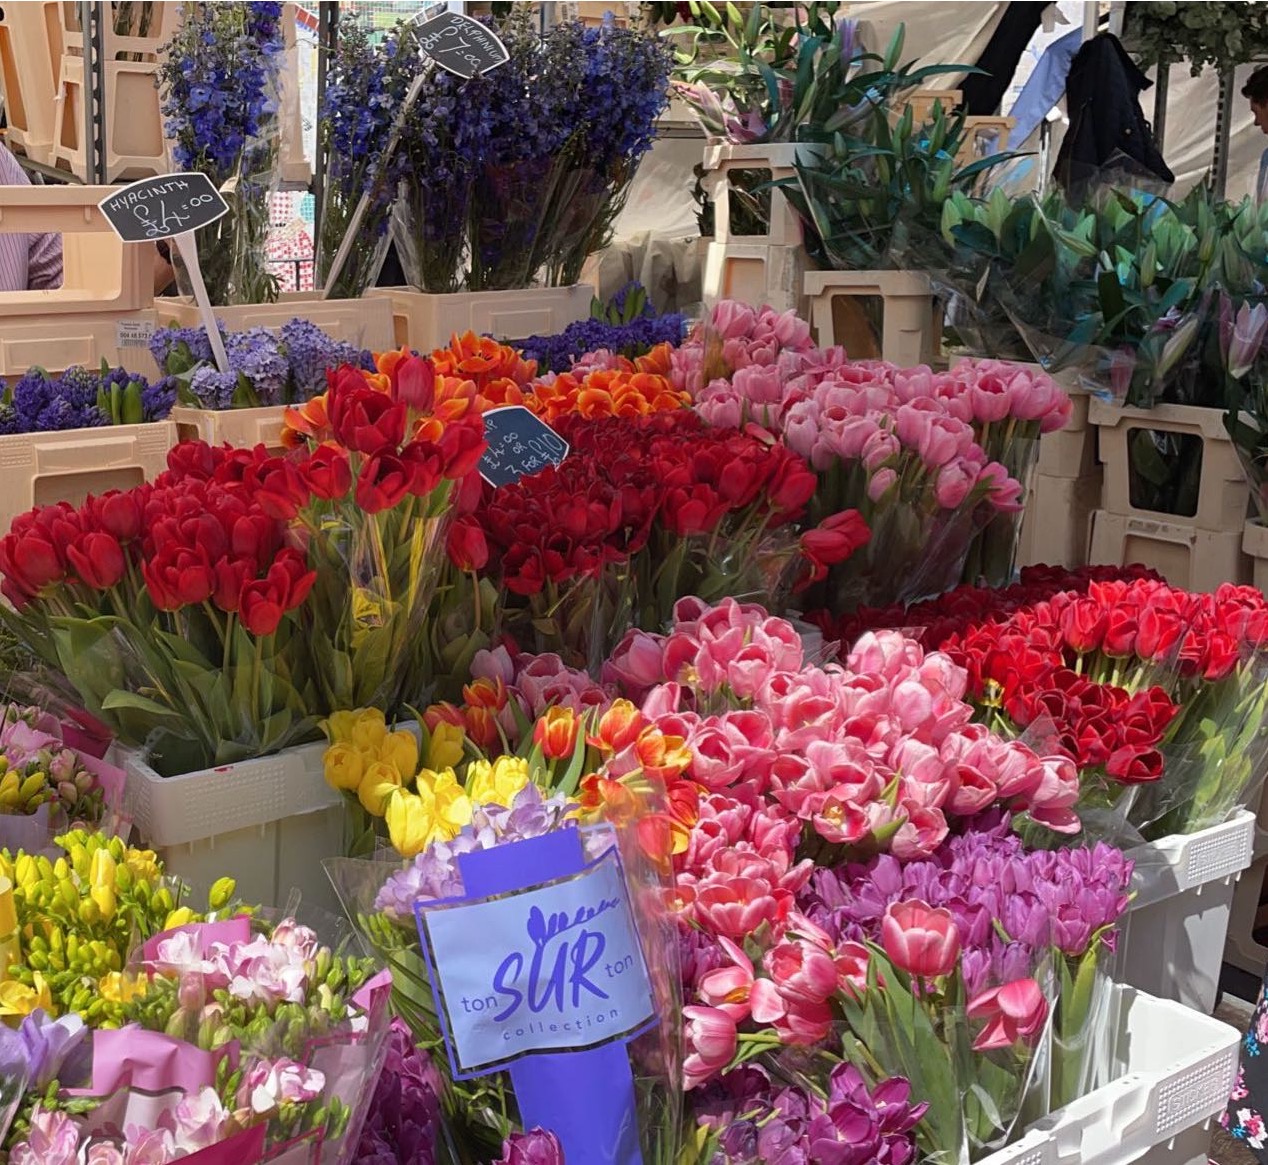 Flower Market in South London